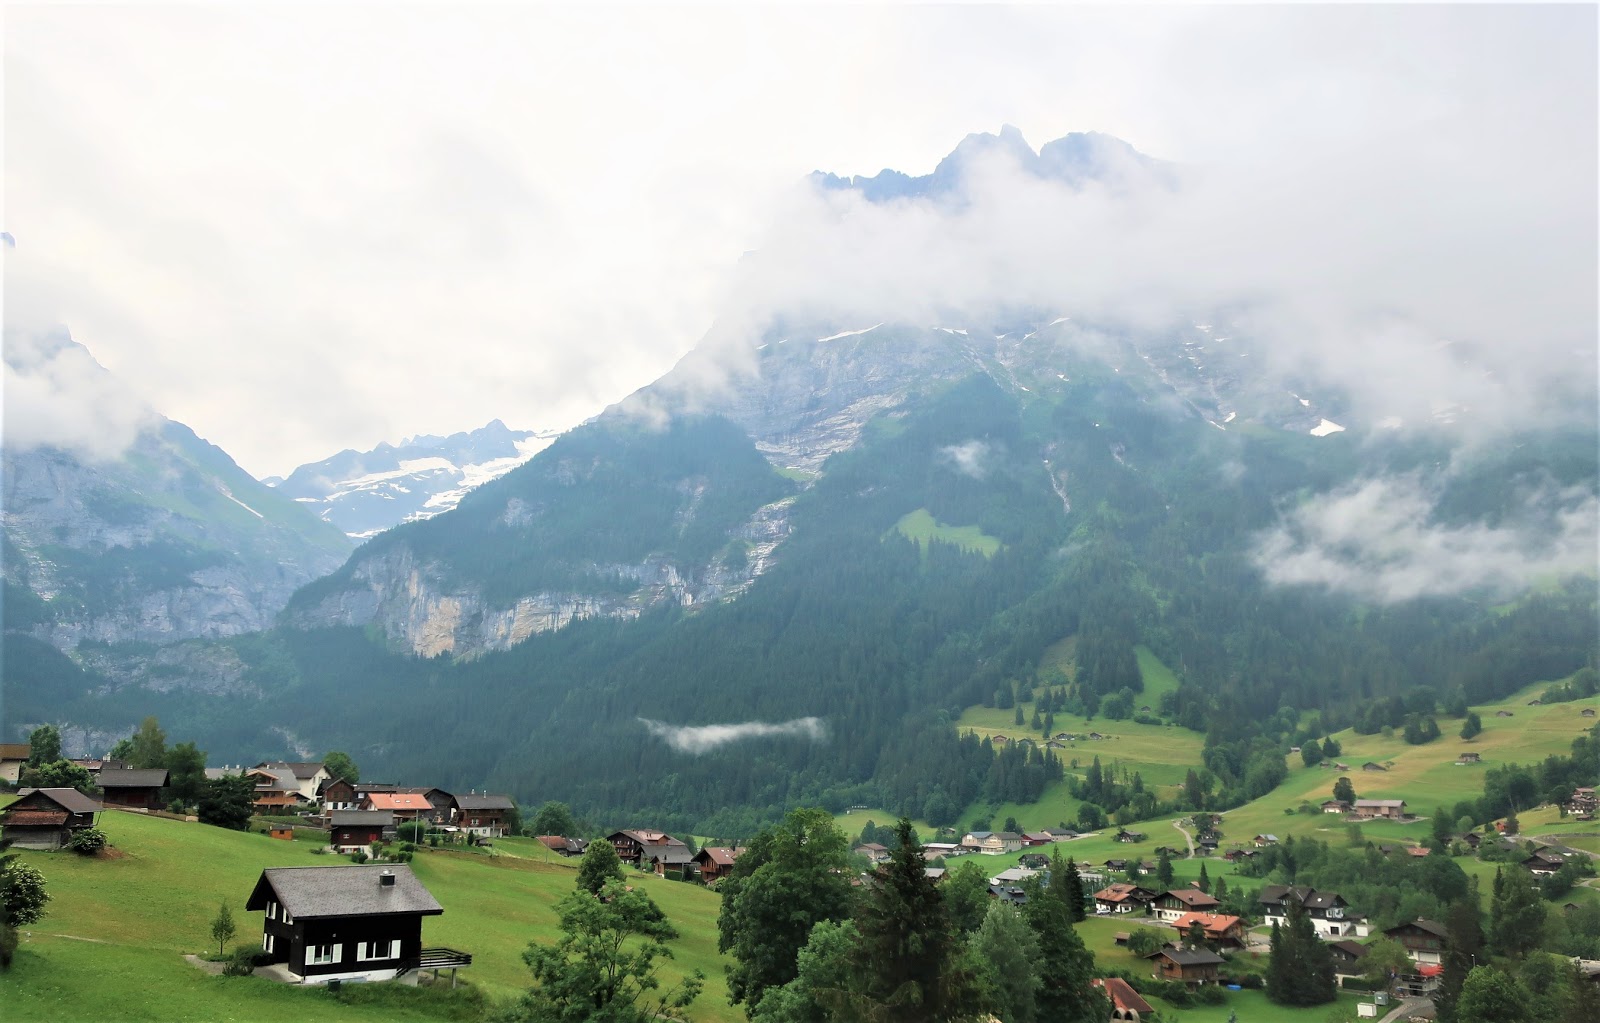 スイス旅 チューリッヒ 成田 スイスインターナショナルエアラインズ エコノミークラス 搭乗 フリーランス女子の旅とグルメのブログ